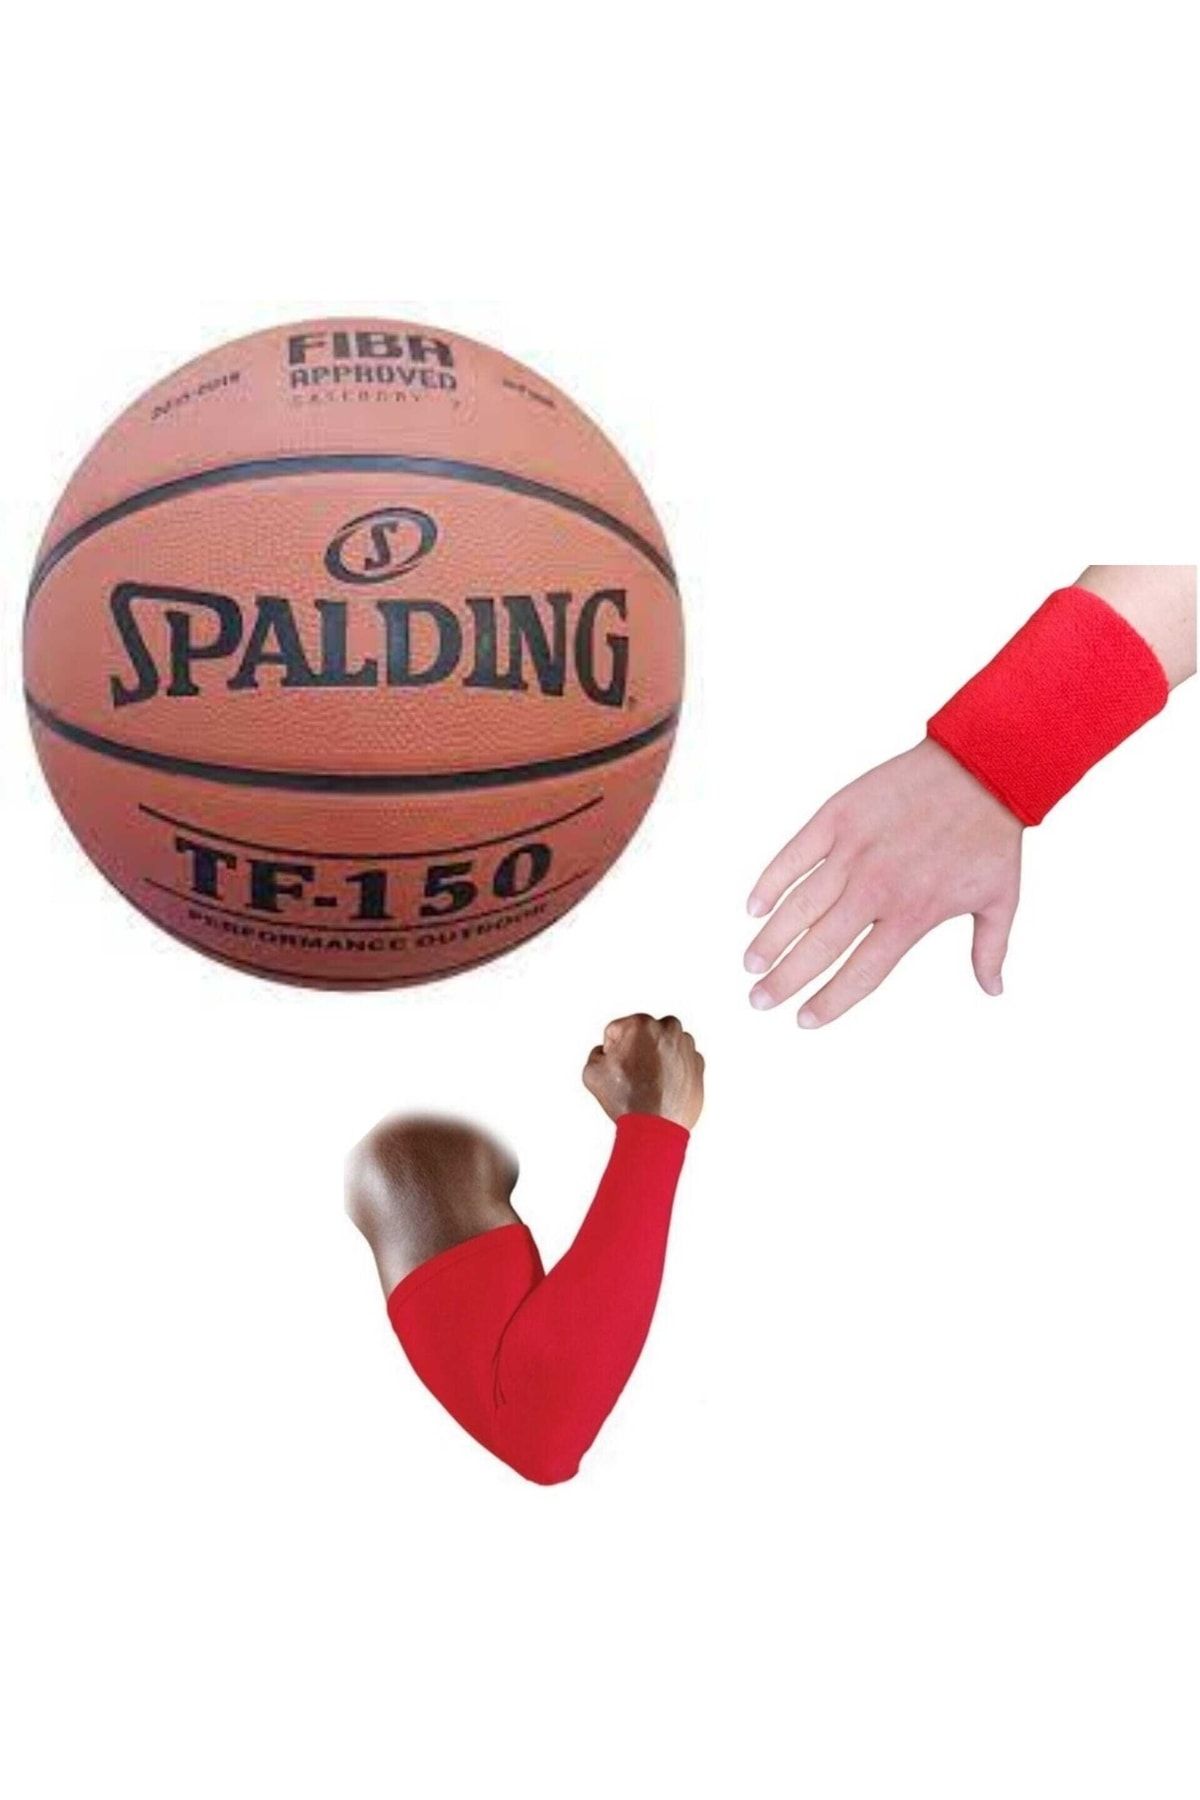 Spalding Tf-150 Basketbol Topu Perform Size 5 Fıba Logolu+basketbol Dirsekliği+havlu Bileklik